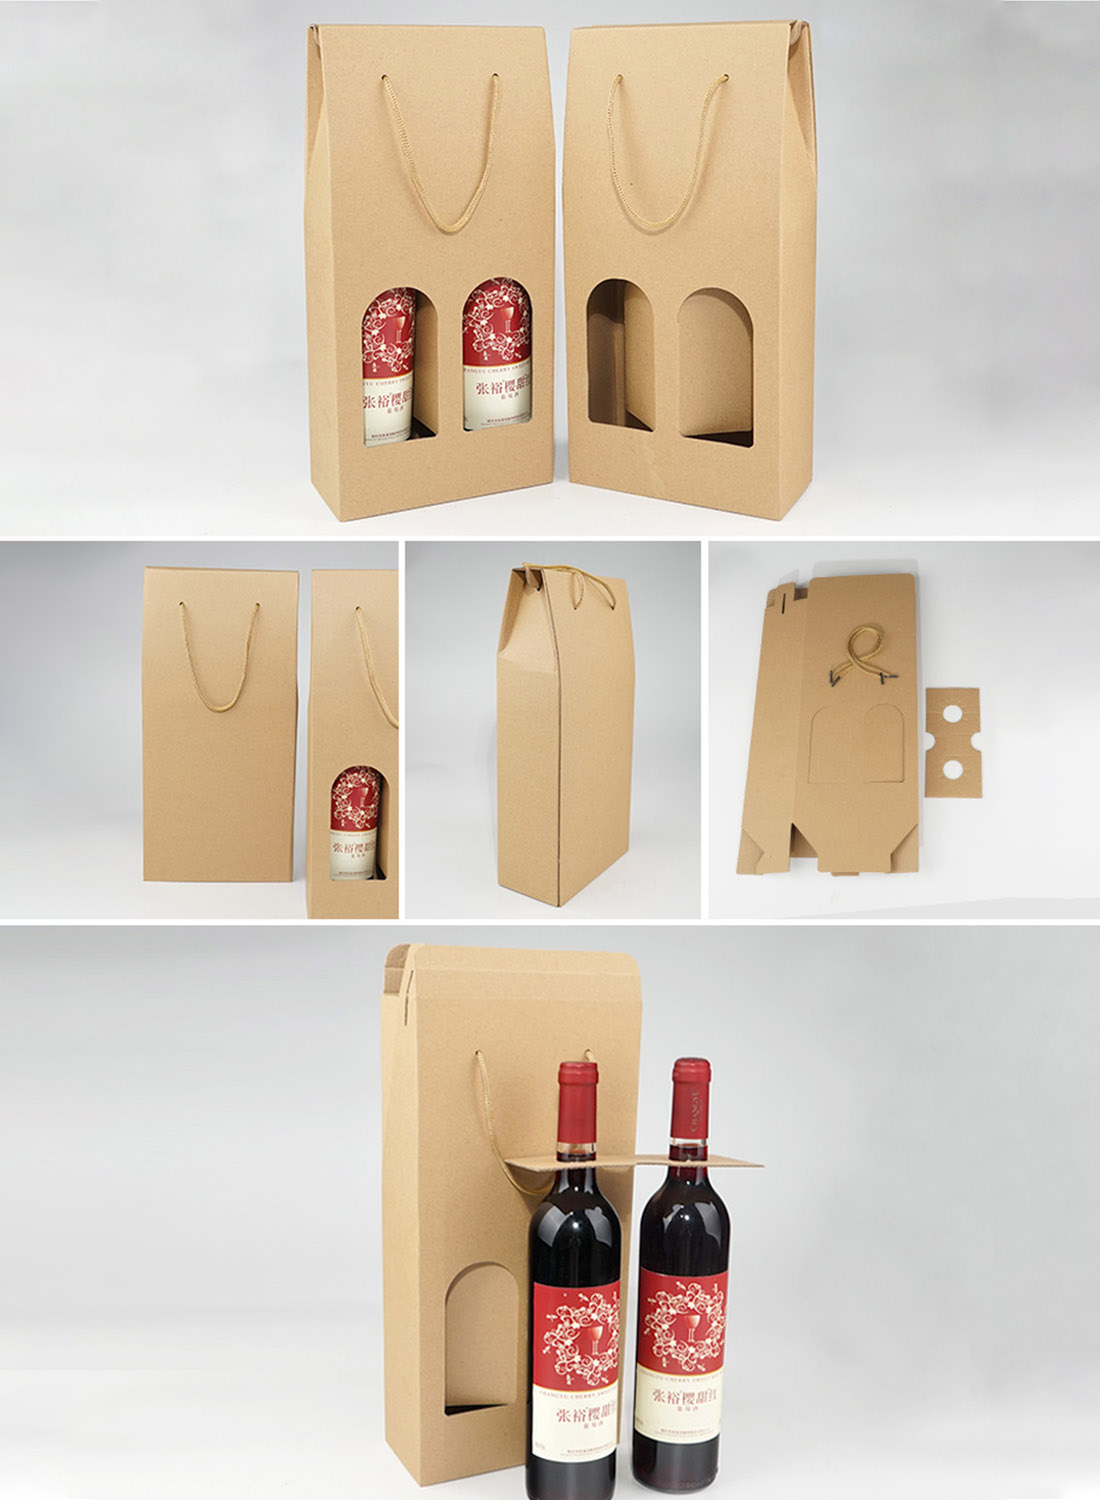 खरीदने के लिए अच्छी गुणवत्ता वाले वाइन पैकेजिंग बॉक्स आपूर्तिकर्ता,अच्छी गुणवत्ता वाले वाइन पैकेजिंग बॉक्स आपूर्तिकर्ता दाम,अच्छी गुणवत्ता वाले वाइन पैकेजिंग बॉक्स आपूर्तिकर्ता ब्रांड,अच्छी गुणवत्ता वाले वाइन पैकेजिंग बॉक्स आपूर्तिकर्ता मैन्युफैक्चरर्स,अच्छी गुणवत्ता वाले वाइन पैकेजिंग बॉक्स आपूर्तिकर्ता उद्धृत मूल्य,अच्छी गुणवत्ता वाले वाइन पैकेजिंग बॉक्स आपूर्तिकर्ता कंपनी,